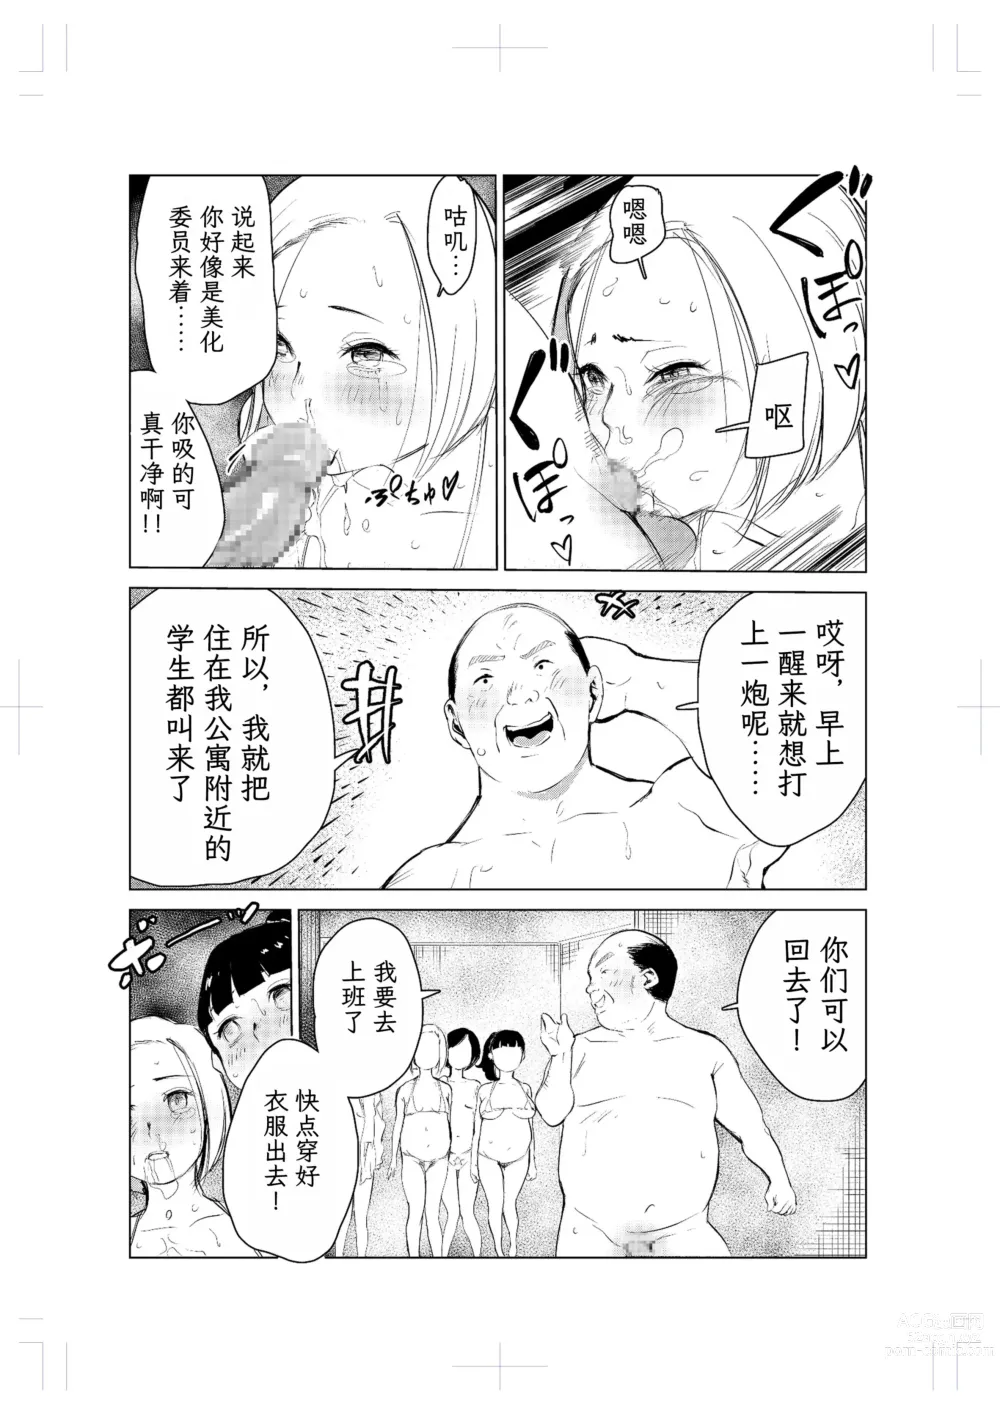 Page 16 of doujinshi 40-sai no Mahoutsukai 2